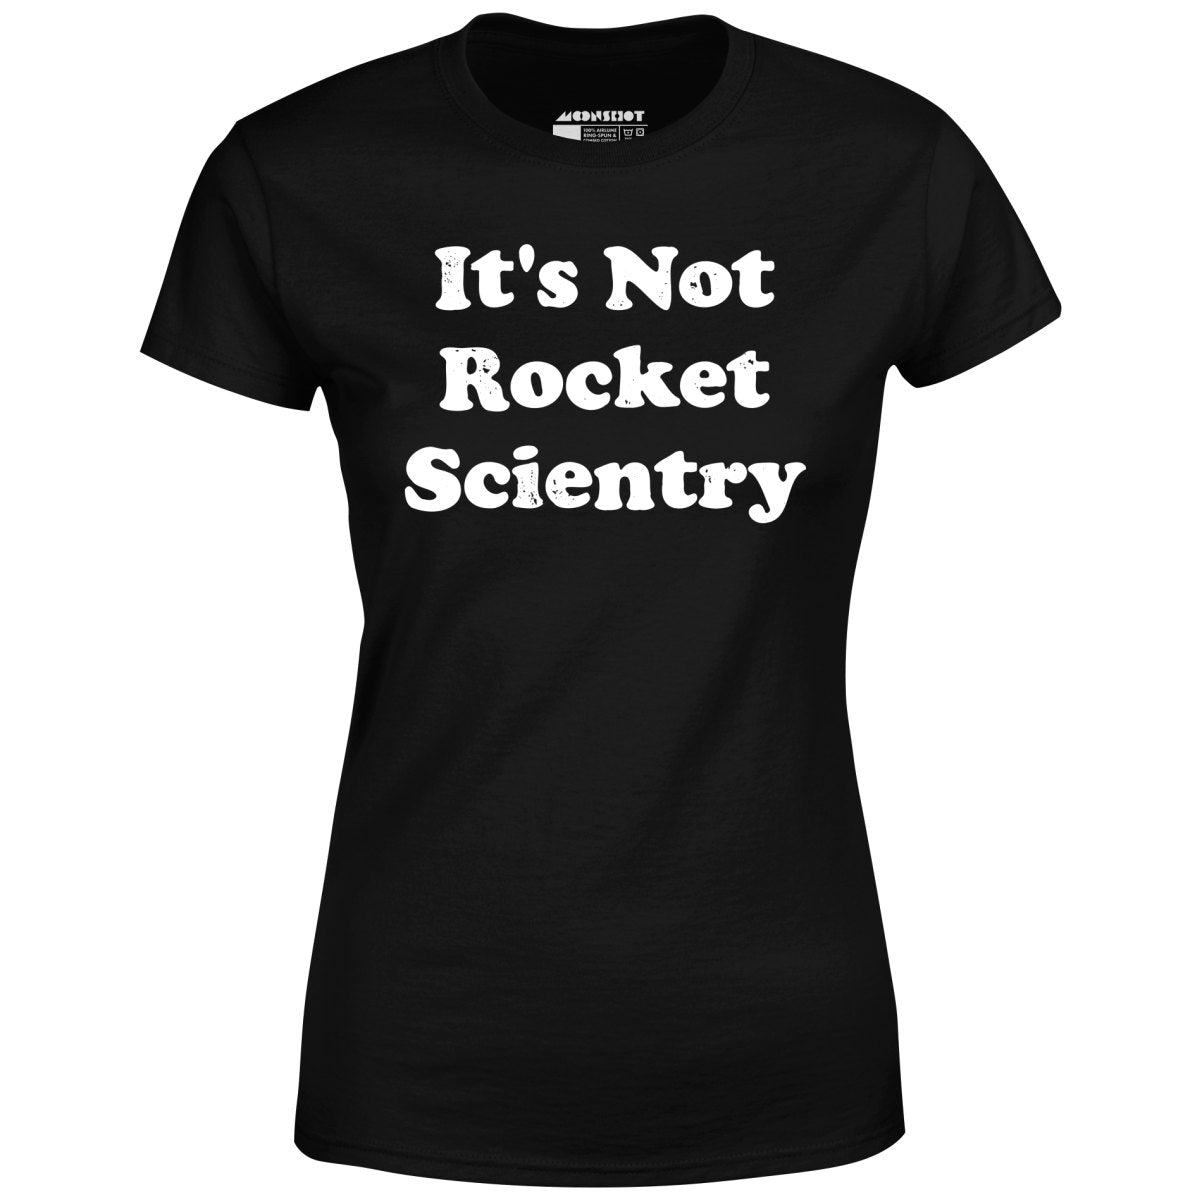 It's Not Rocket Scientry - Women's T-Shirt